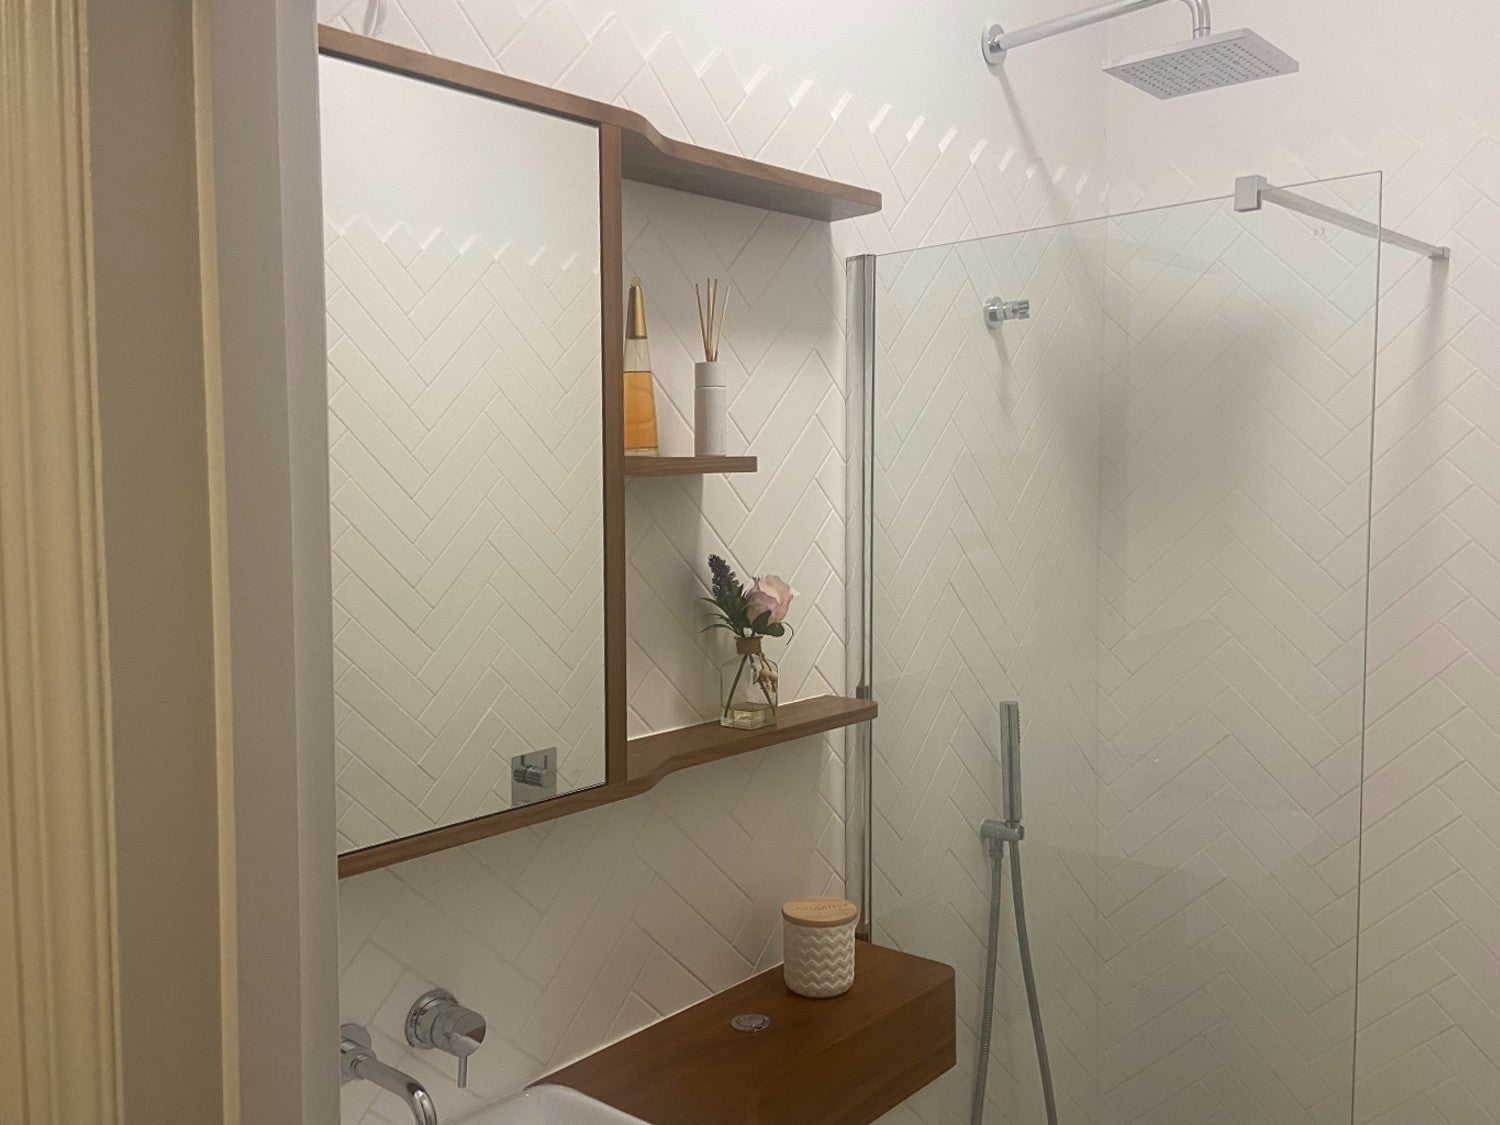 Bespoke shower room furniture